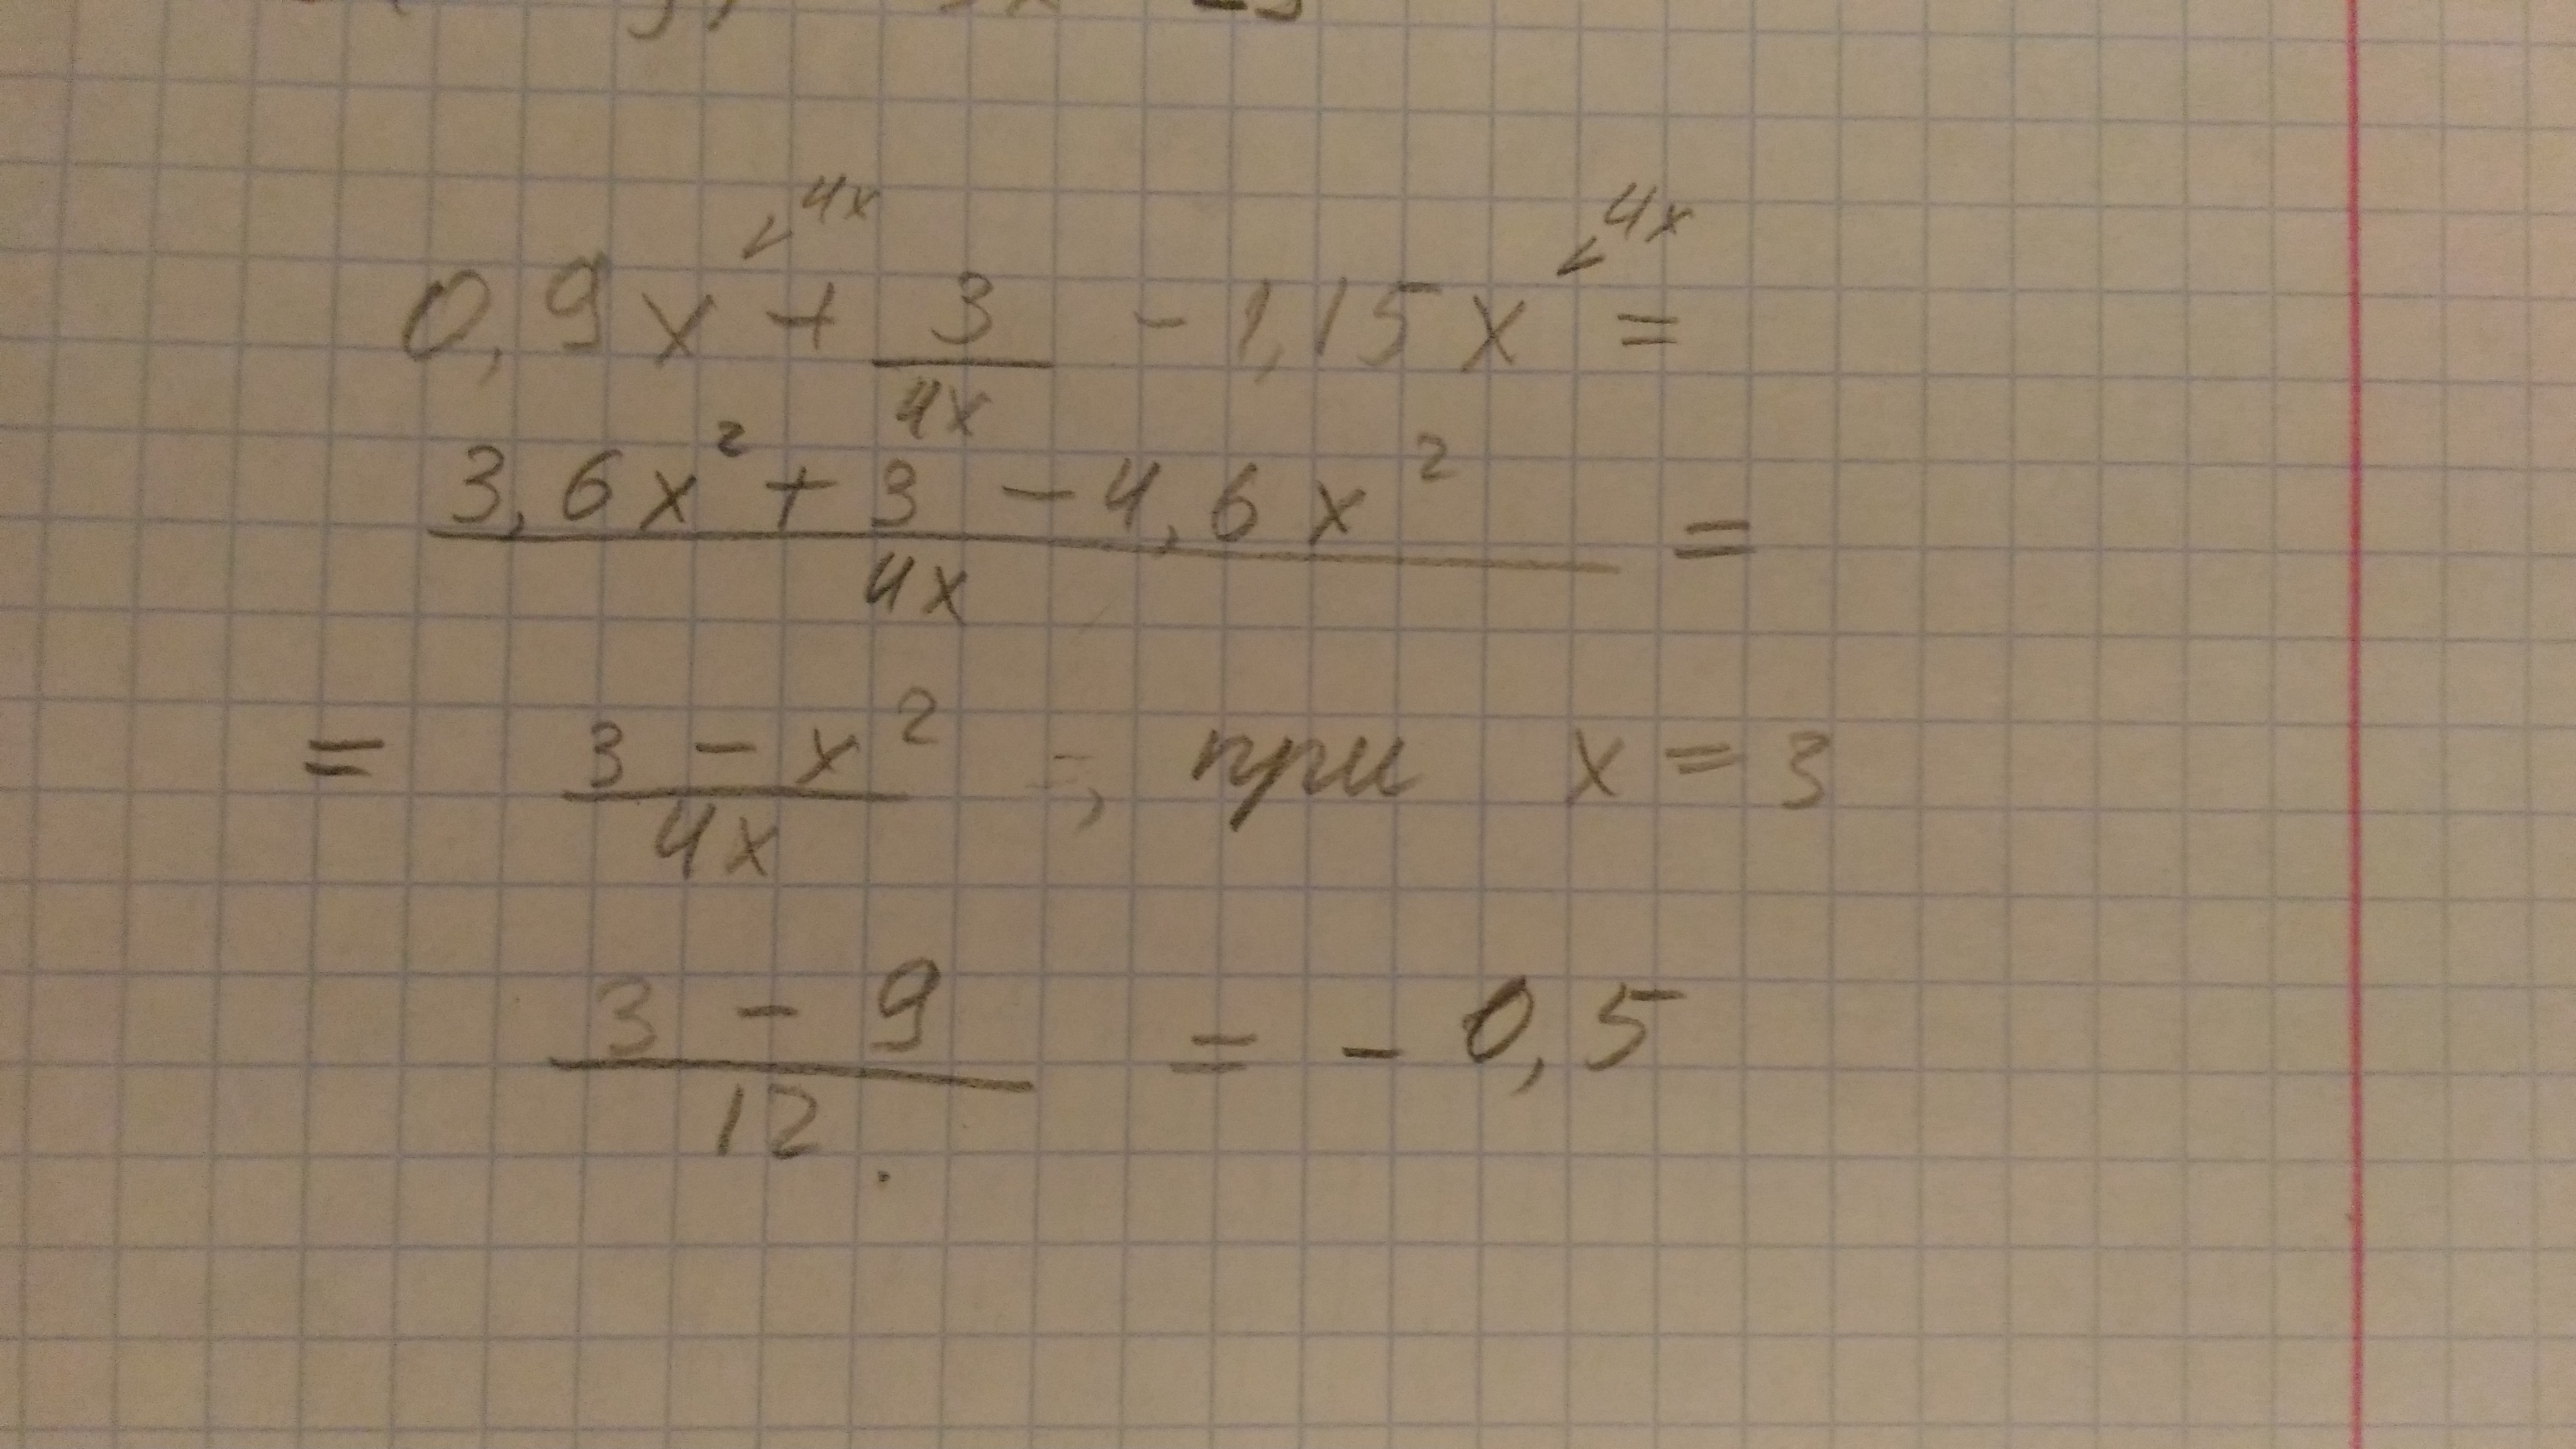 0 83 x 1. |-4|+|1-3x| при x. 4 4 5 X X      при x  3. 3x-|4x+15| при x=-8. X3-15x+80.